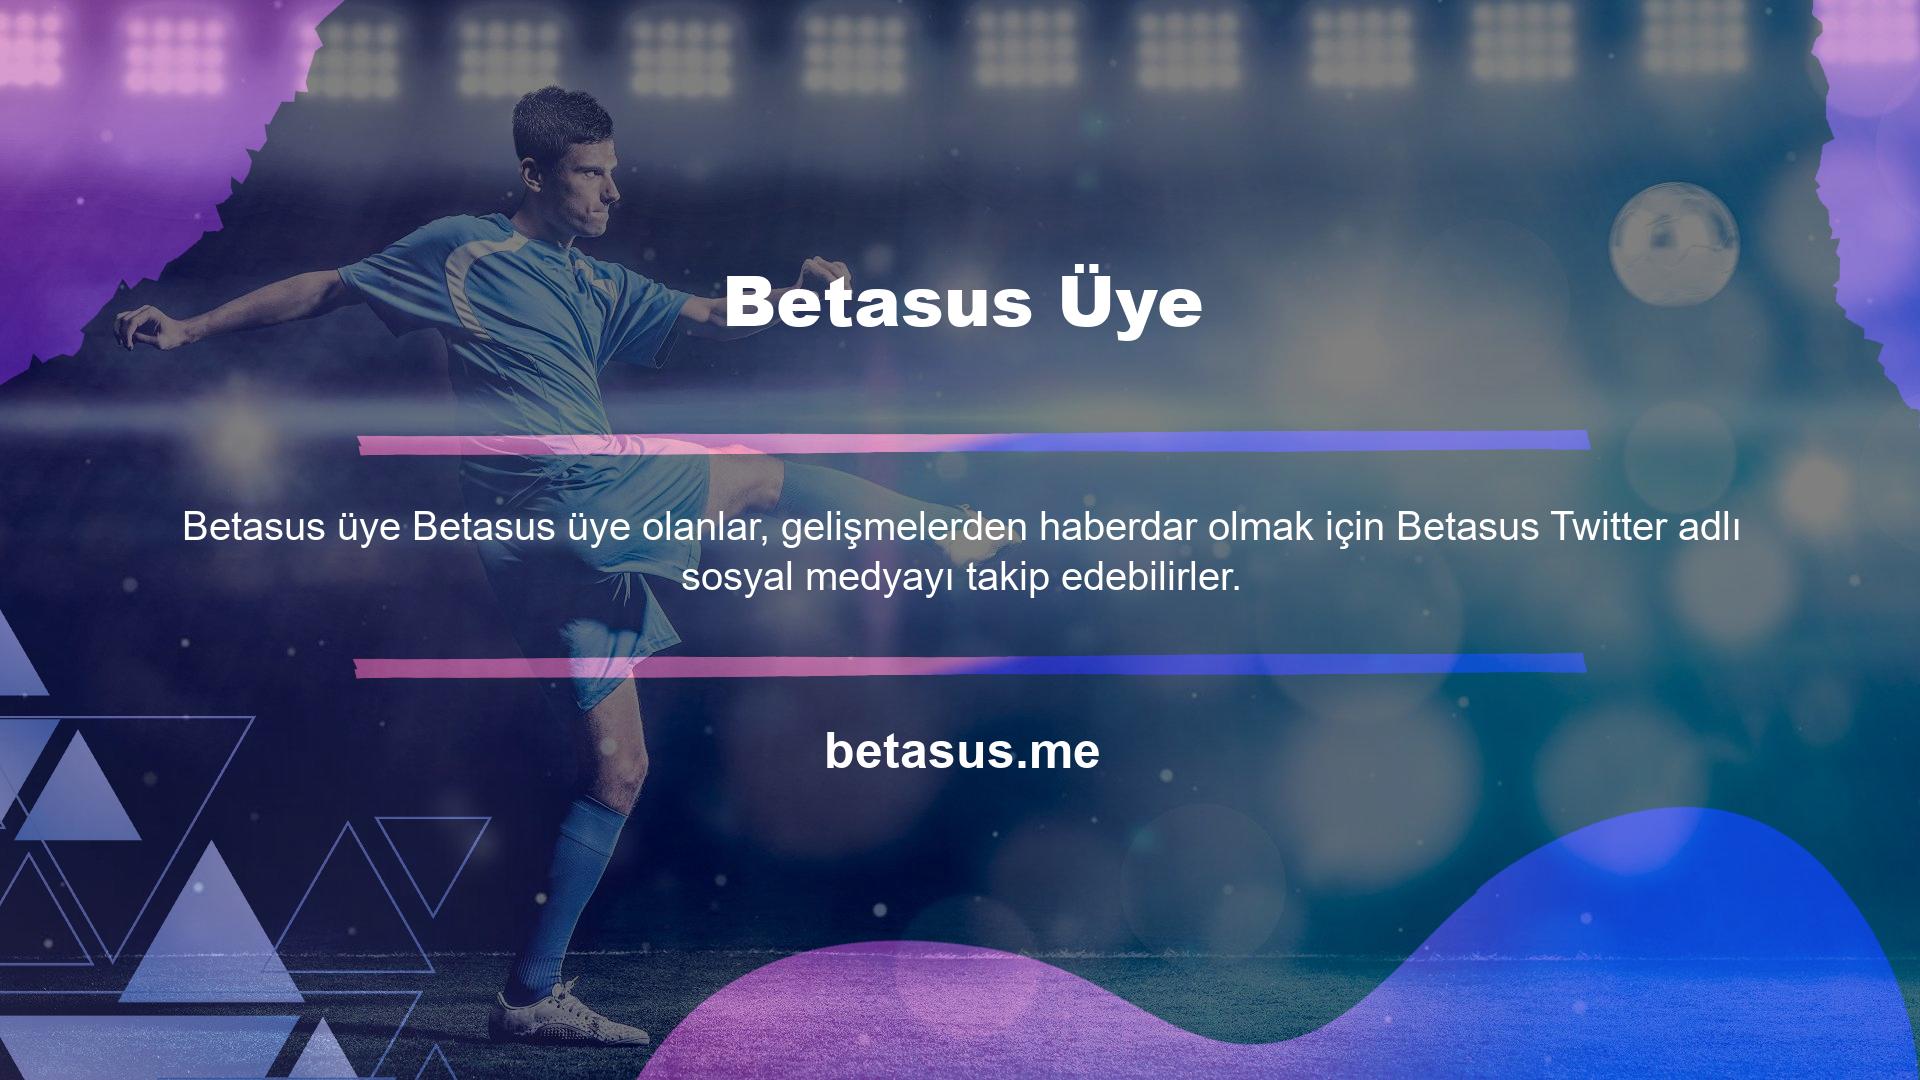 Betasus bahis sitesi, bonus seçenekleri söz konusu olduğunda rakiplerinin çok ilerisindedir ve günümüzde kullanıcılar arasında en popüler bahis sitelerinden biridir